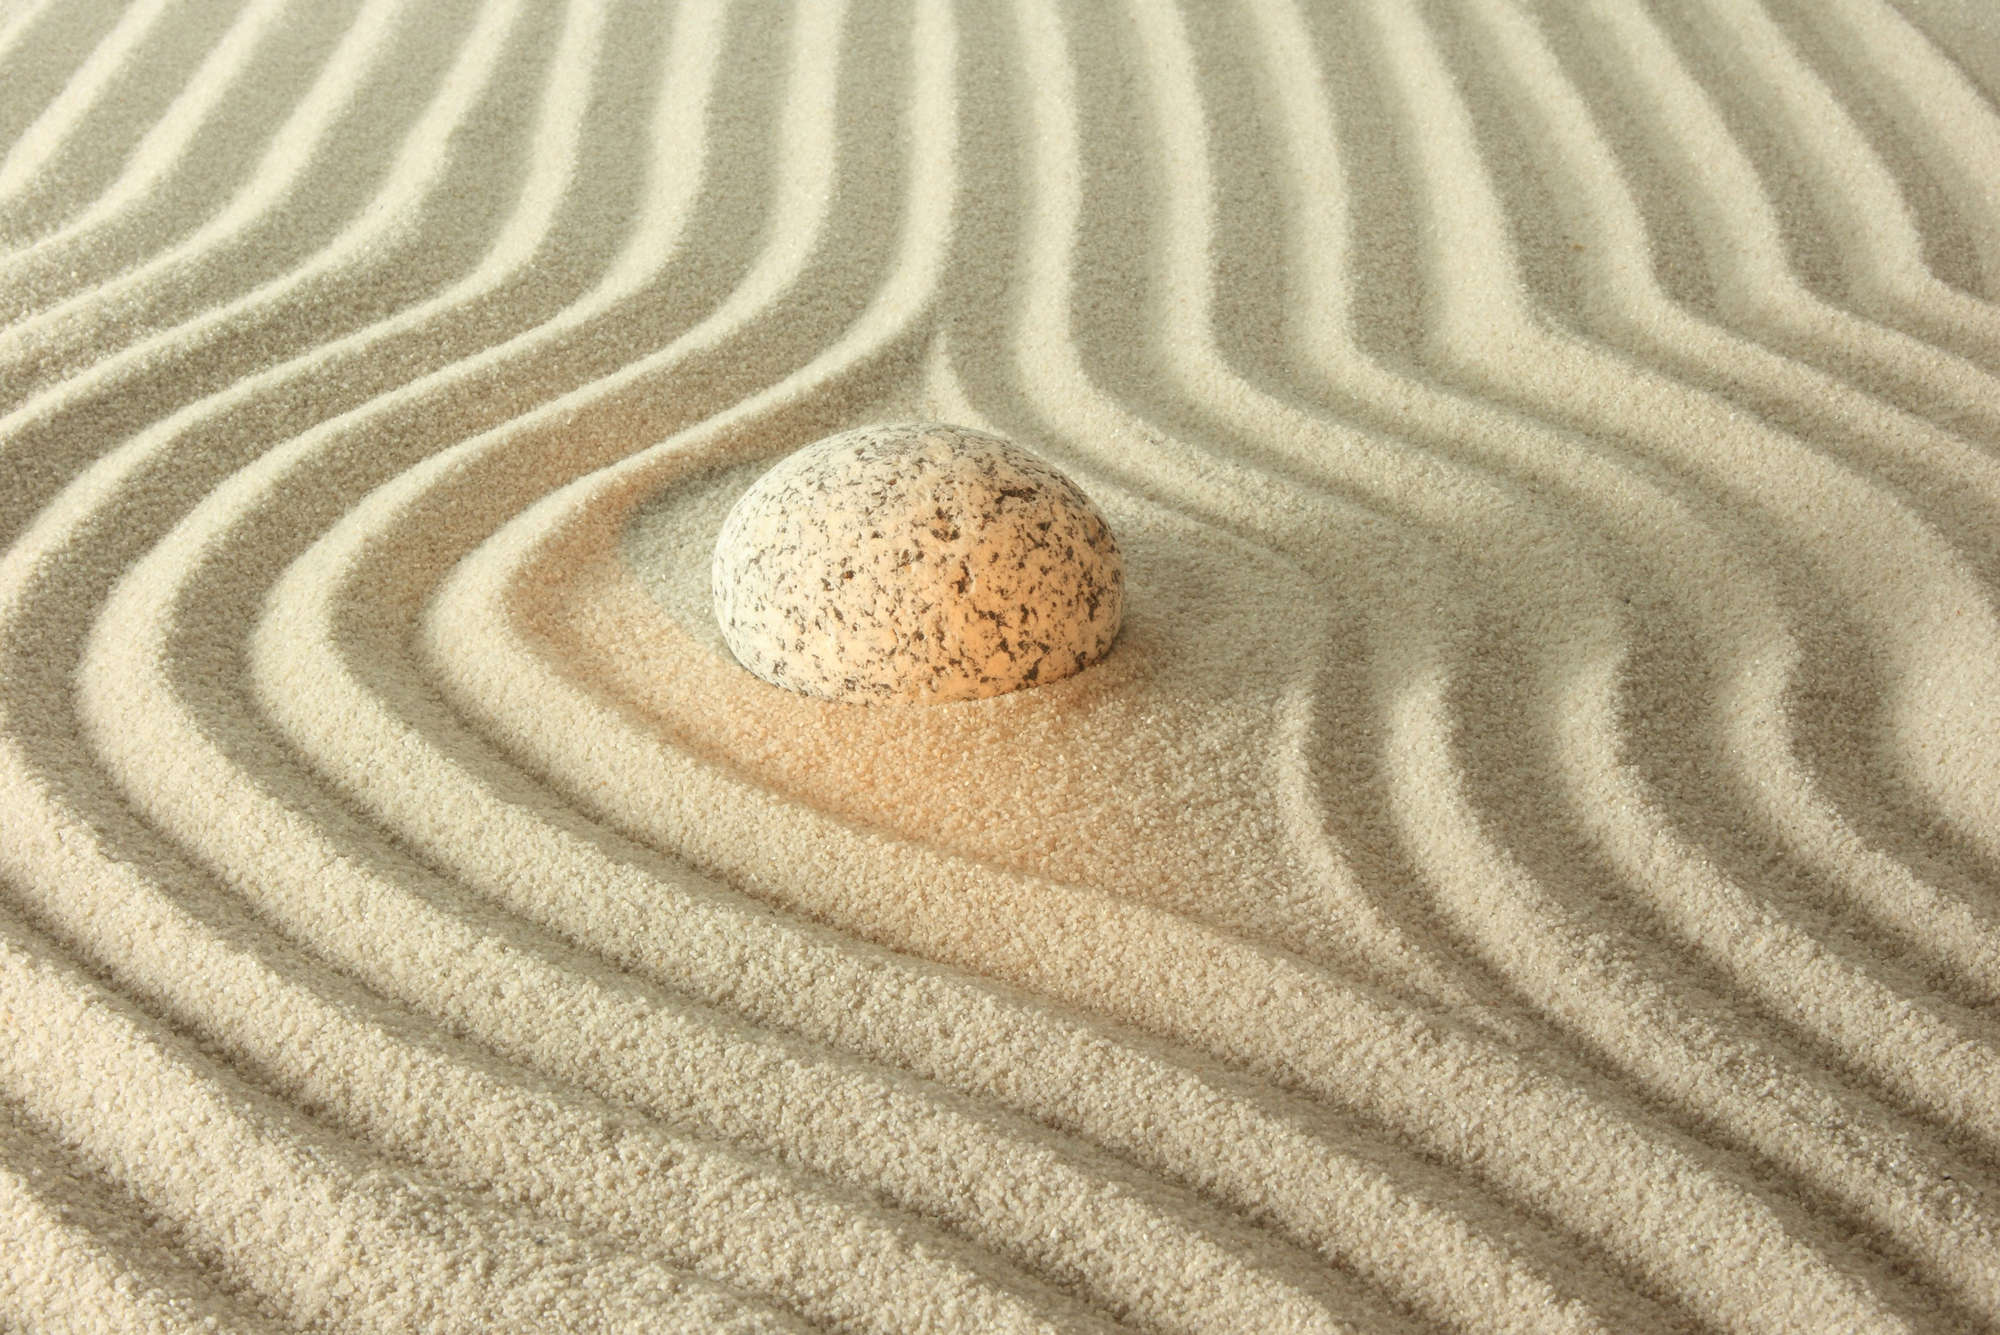             Fotomural piedra resplandeciente en la arena - vellón liso nacarado
        